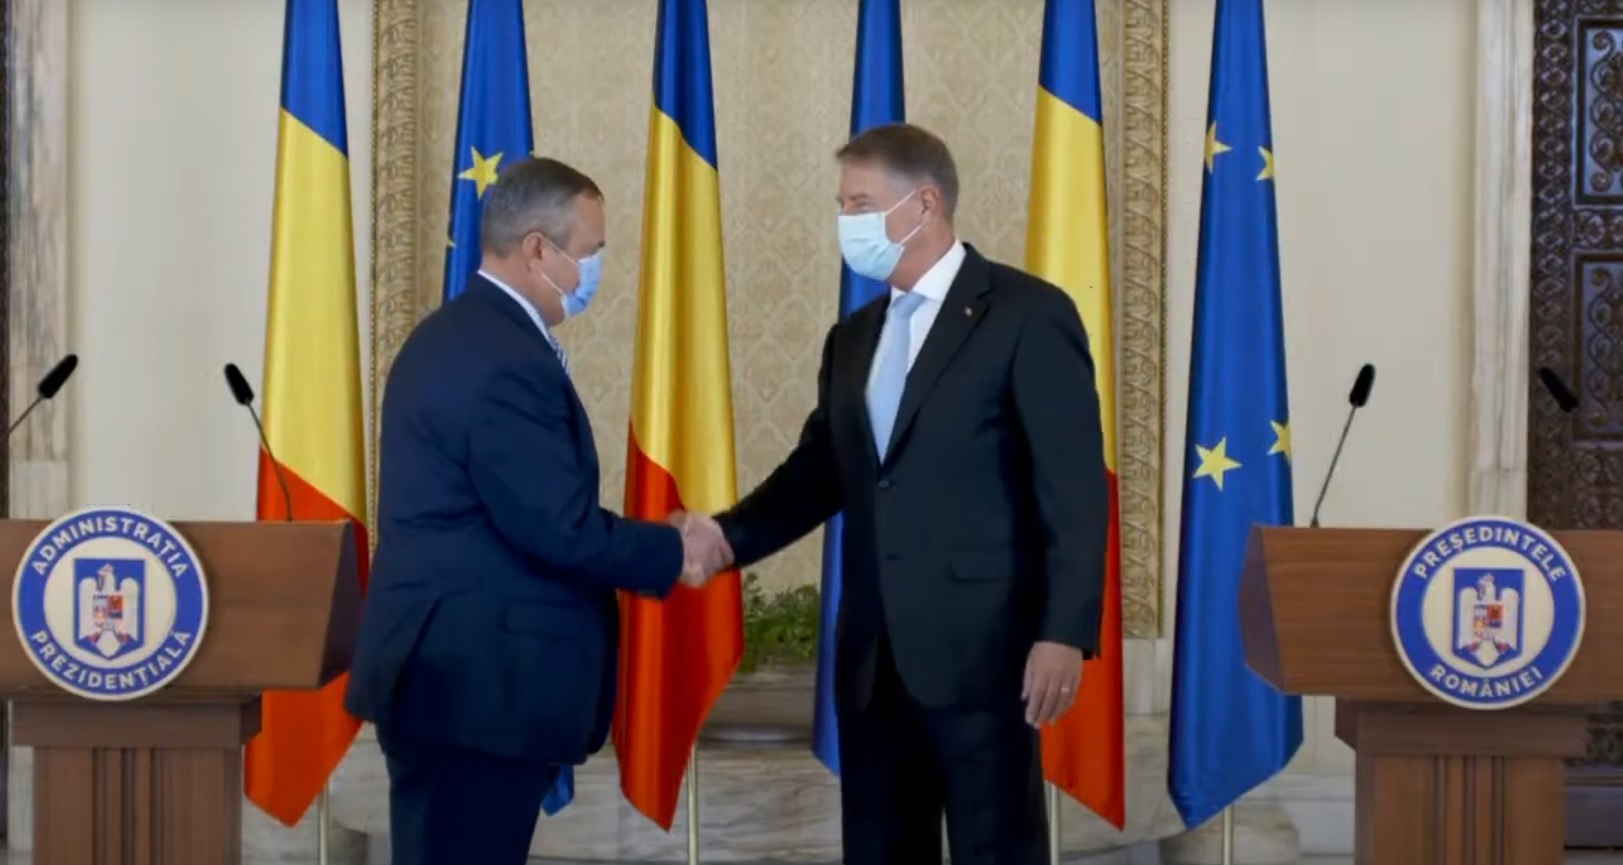 Președintele Klaus Iohannis l-a desemnat din nou pe Nicolae Ciucă să formeze un guvern